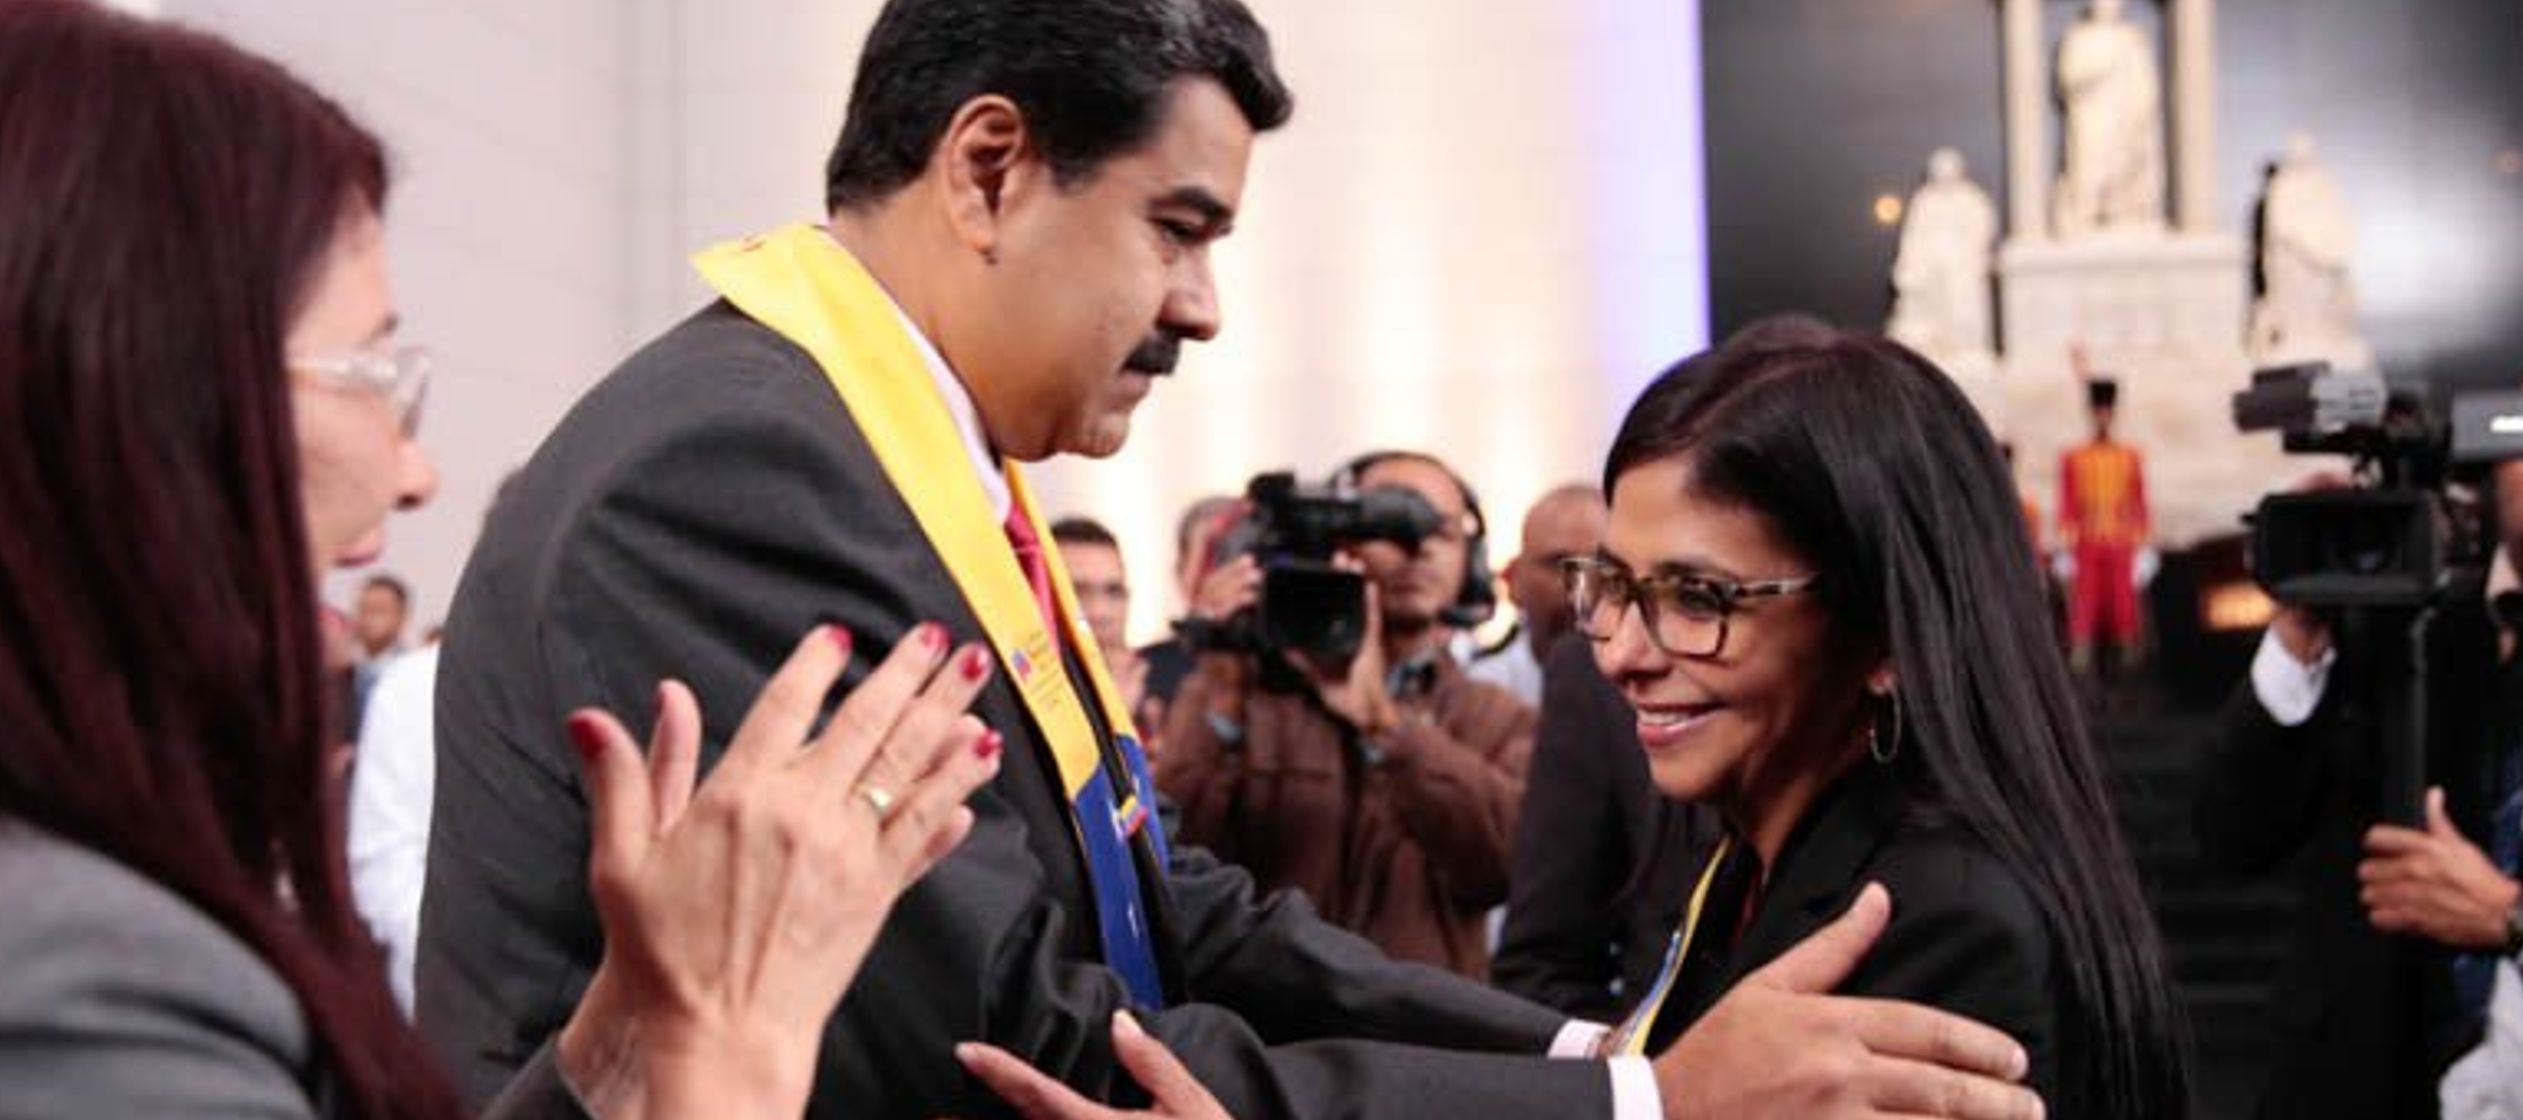 El jefe del Estado venezolano anunció el martes que haría una "renovación...